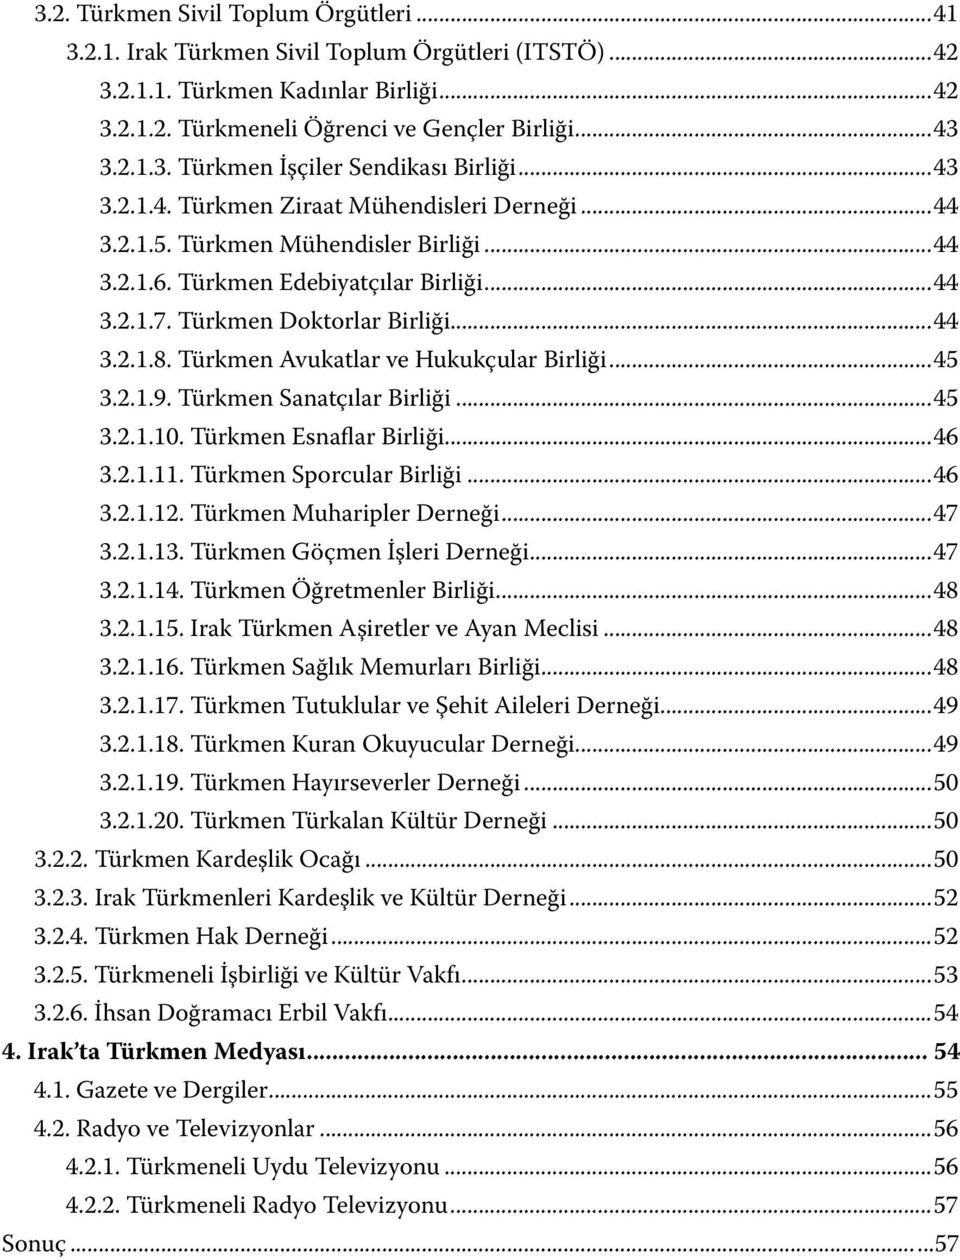 Türkmen Avukatlar ve Hukukçular Birliği...45 3.2.1.9. Türkmen Sanatçılar Birliği...45 3.2.1.10. Türkmen Esnaflar Birliği...46 3.2.1.11. Türkmen Sporcular Birliği...46 3.2.1.12.